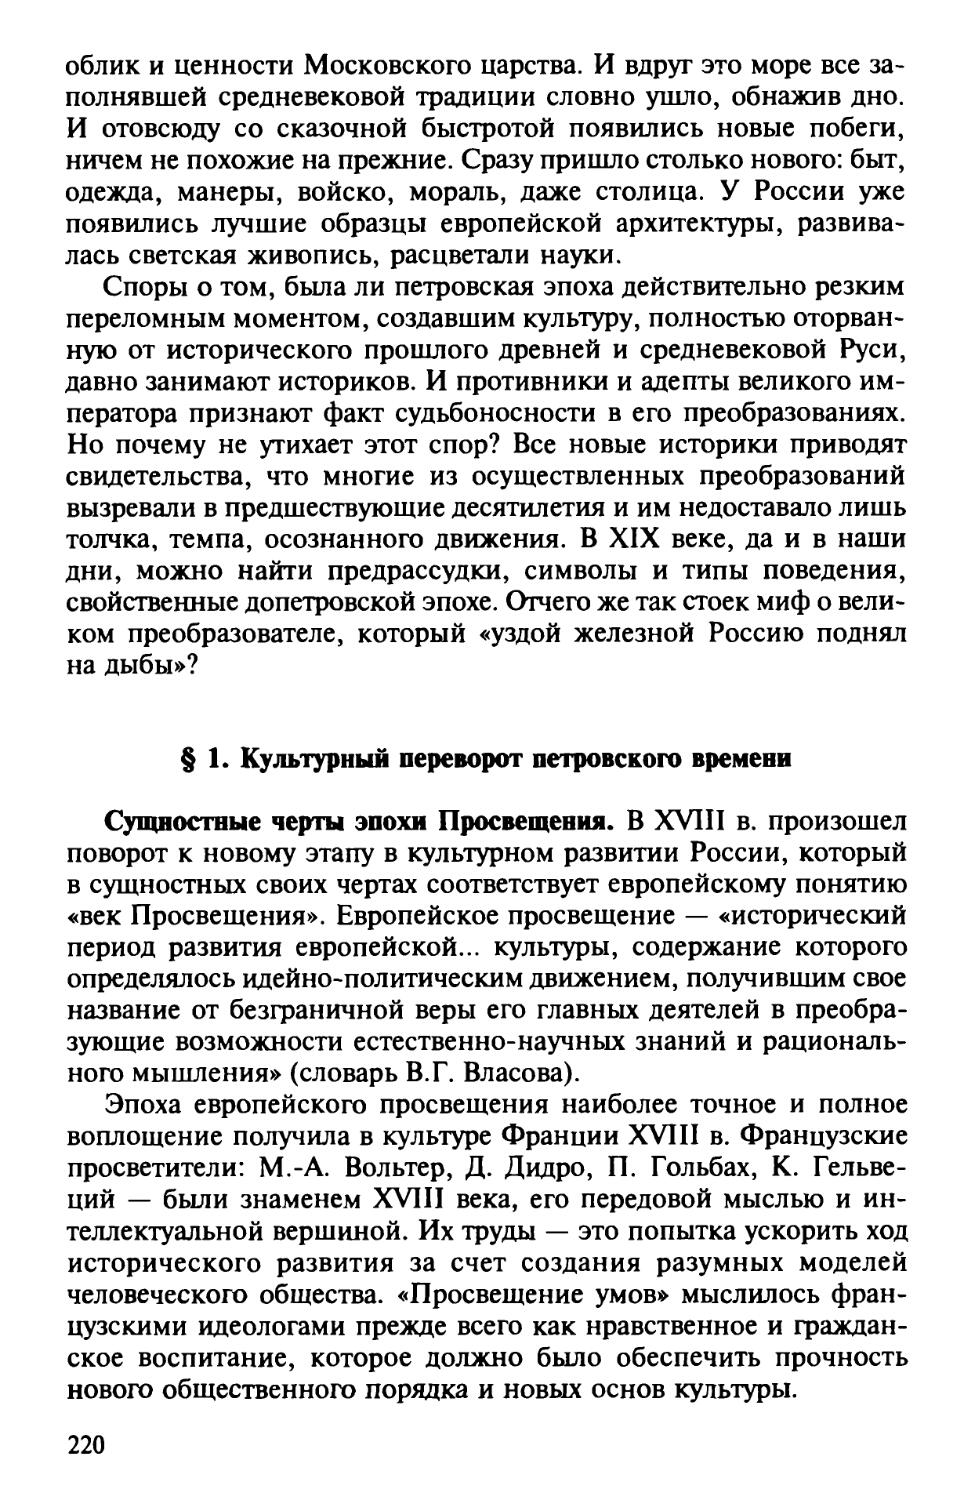 § 1. Культурный переворот петровского времени